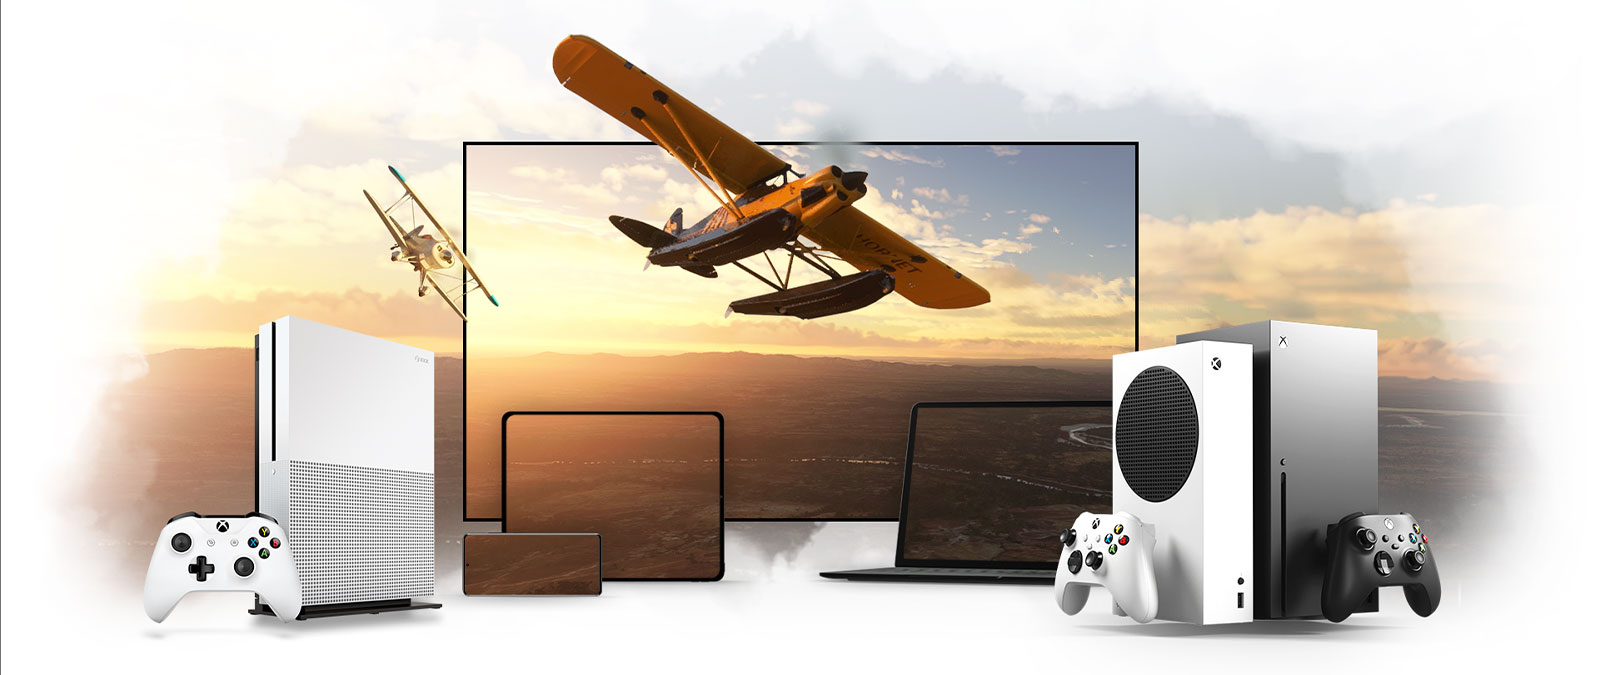 Řada zařízení včetně televizoru, Xboxu One a Xboxu Series X, vrtulové letadlo odlétá od sluncem zalitého horizontu.